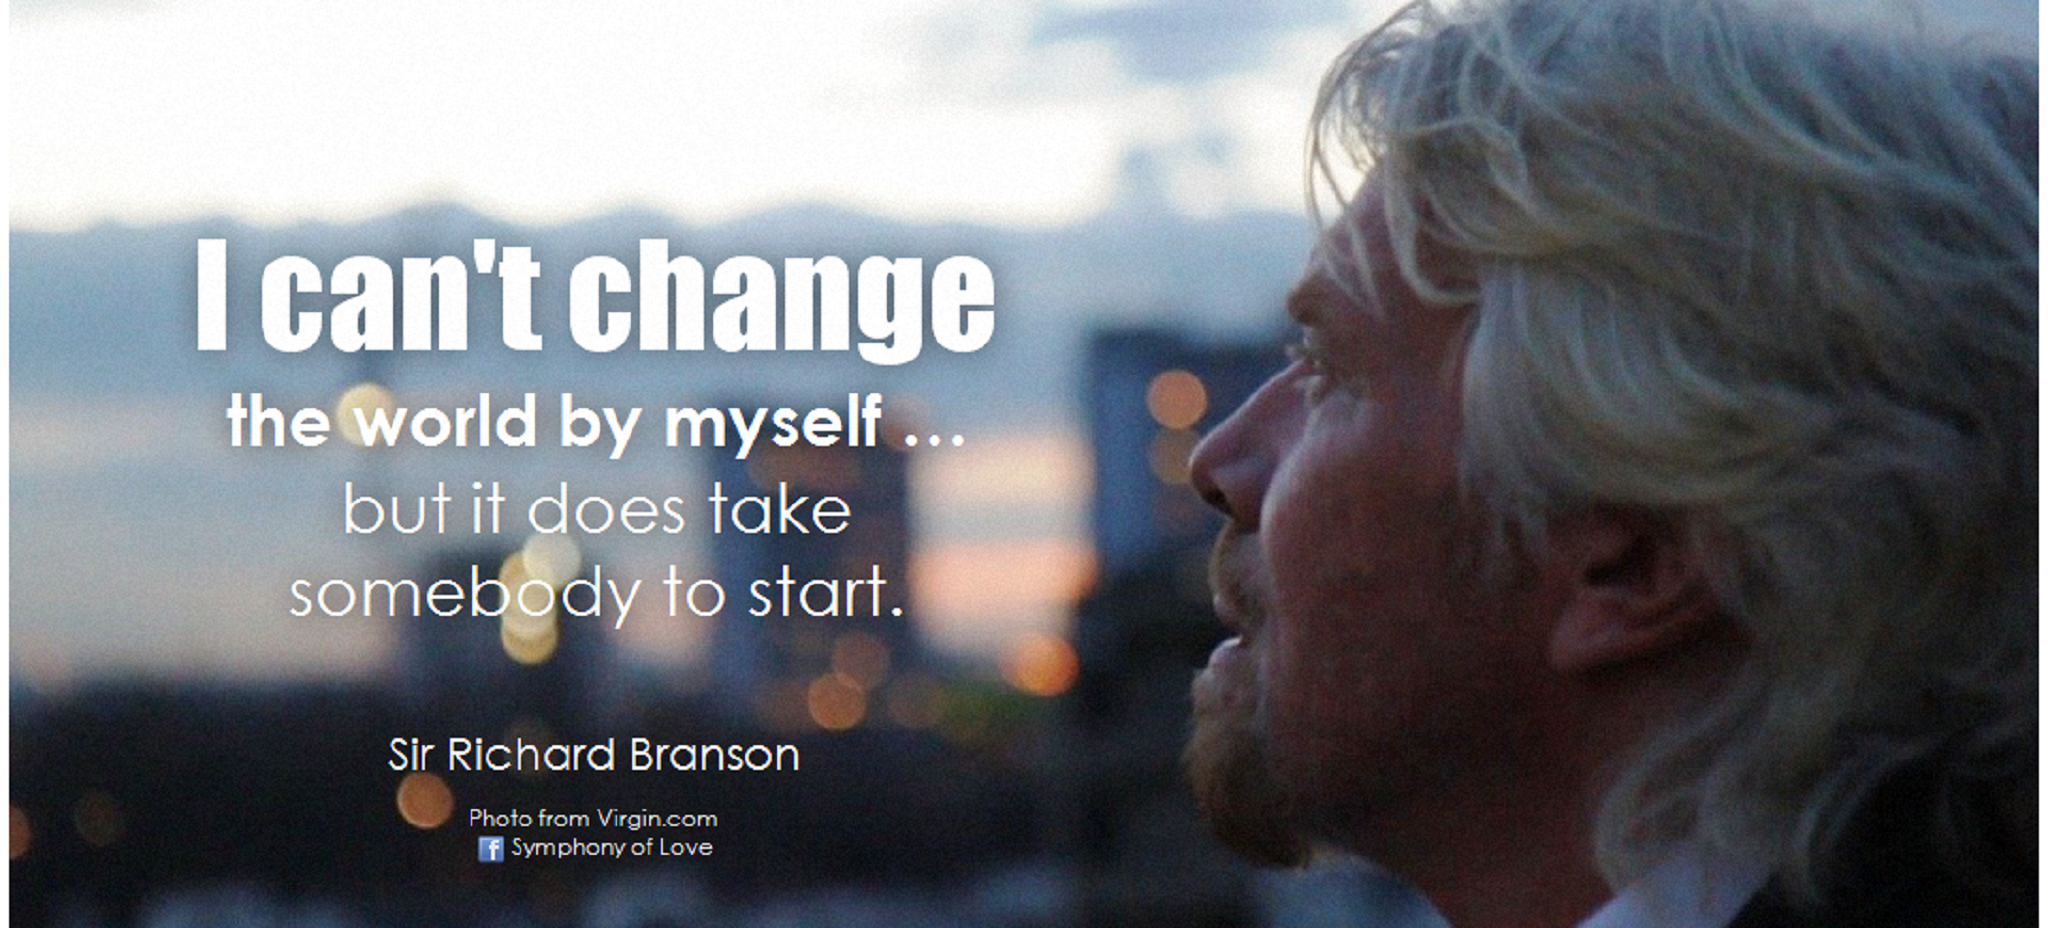 傳奇創業家 Richard Branson 的「維京法則」